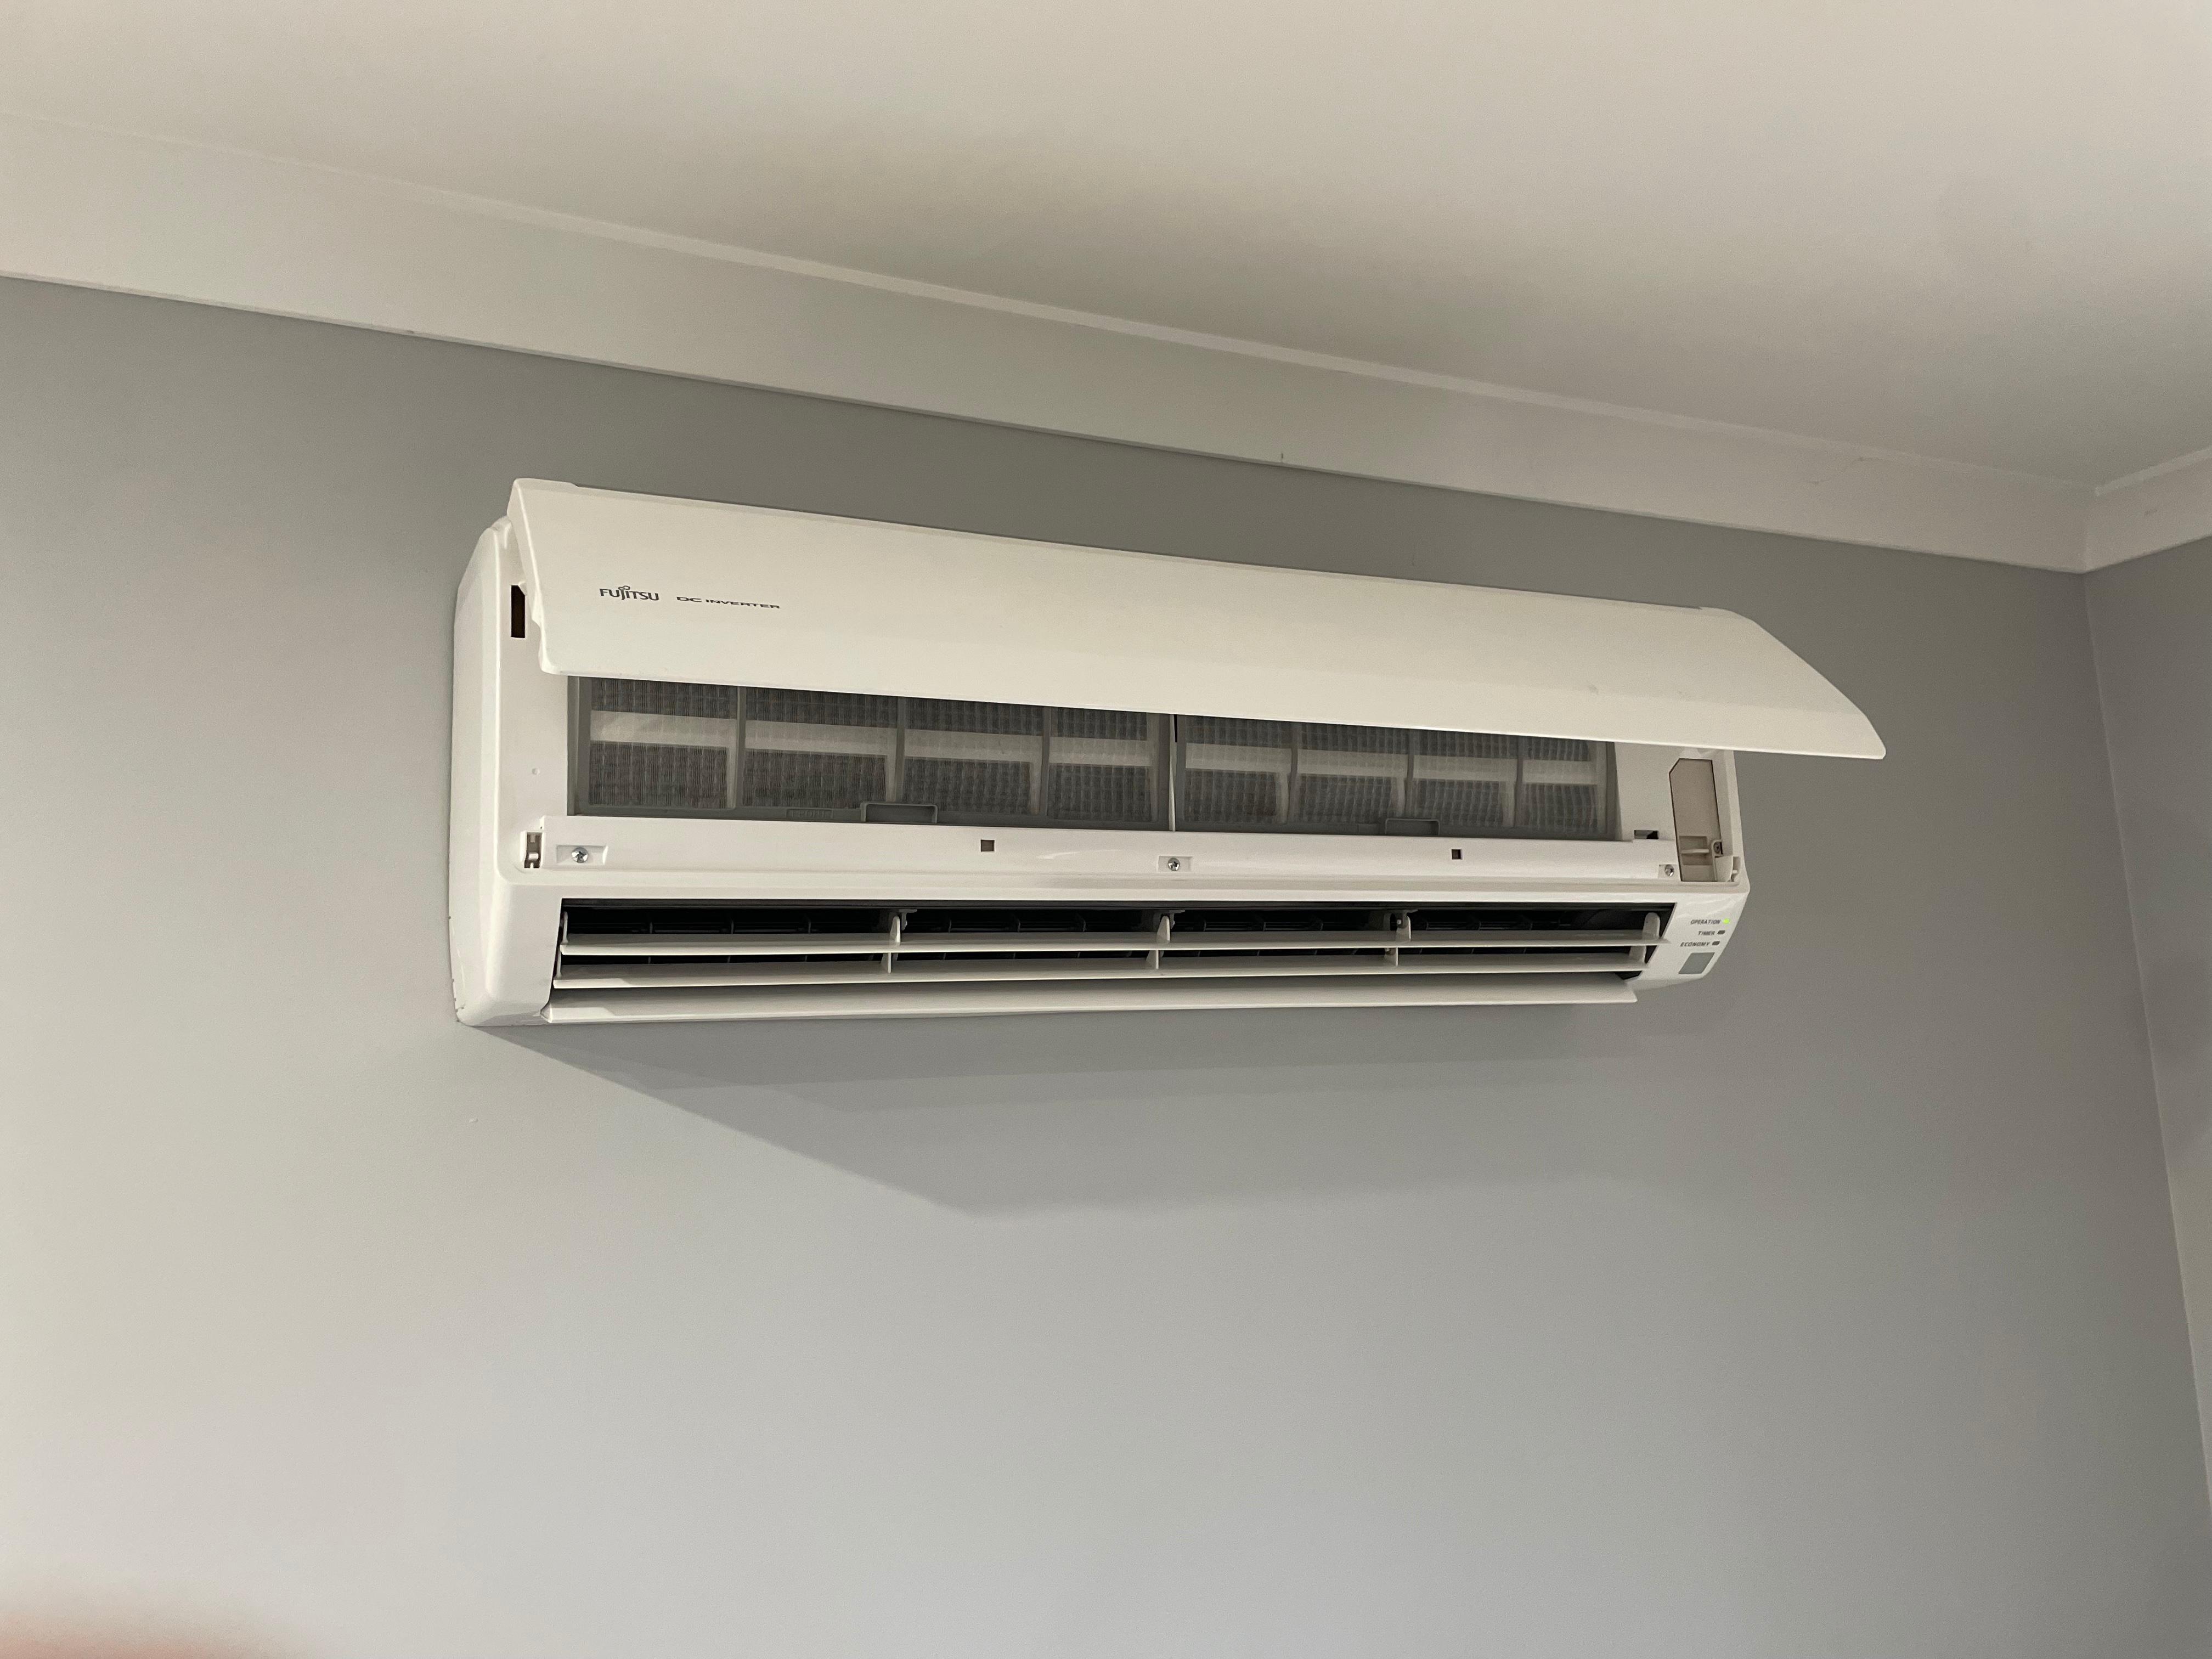 Images Hobart Heat pump solutions